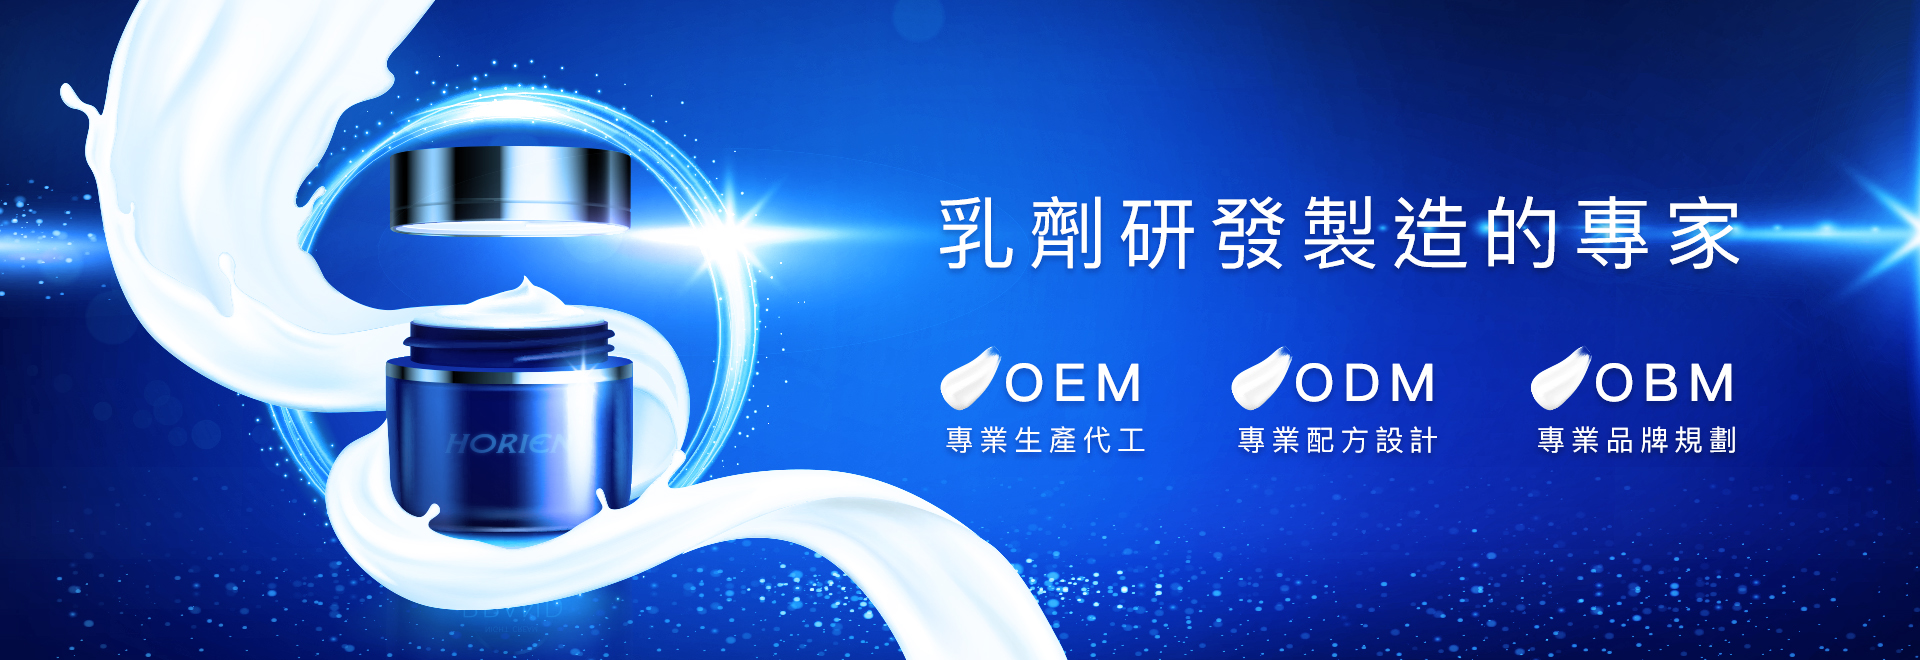 海昌國際乳劑代工專家， OEM ODM OBM 